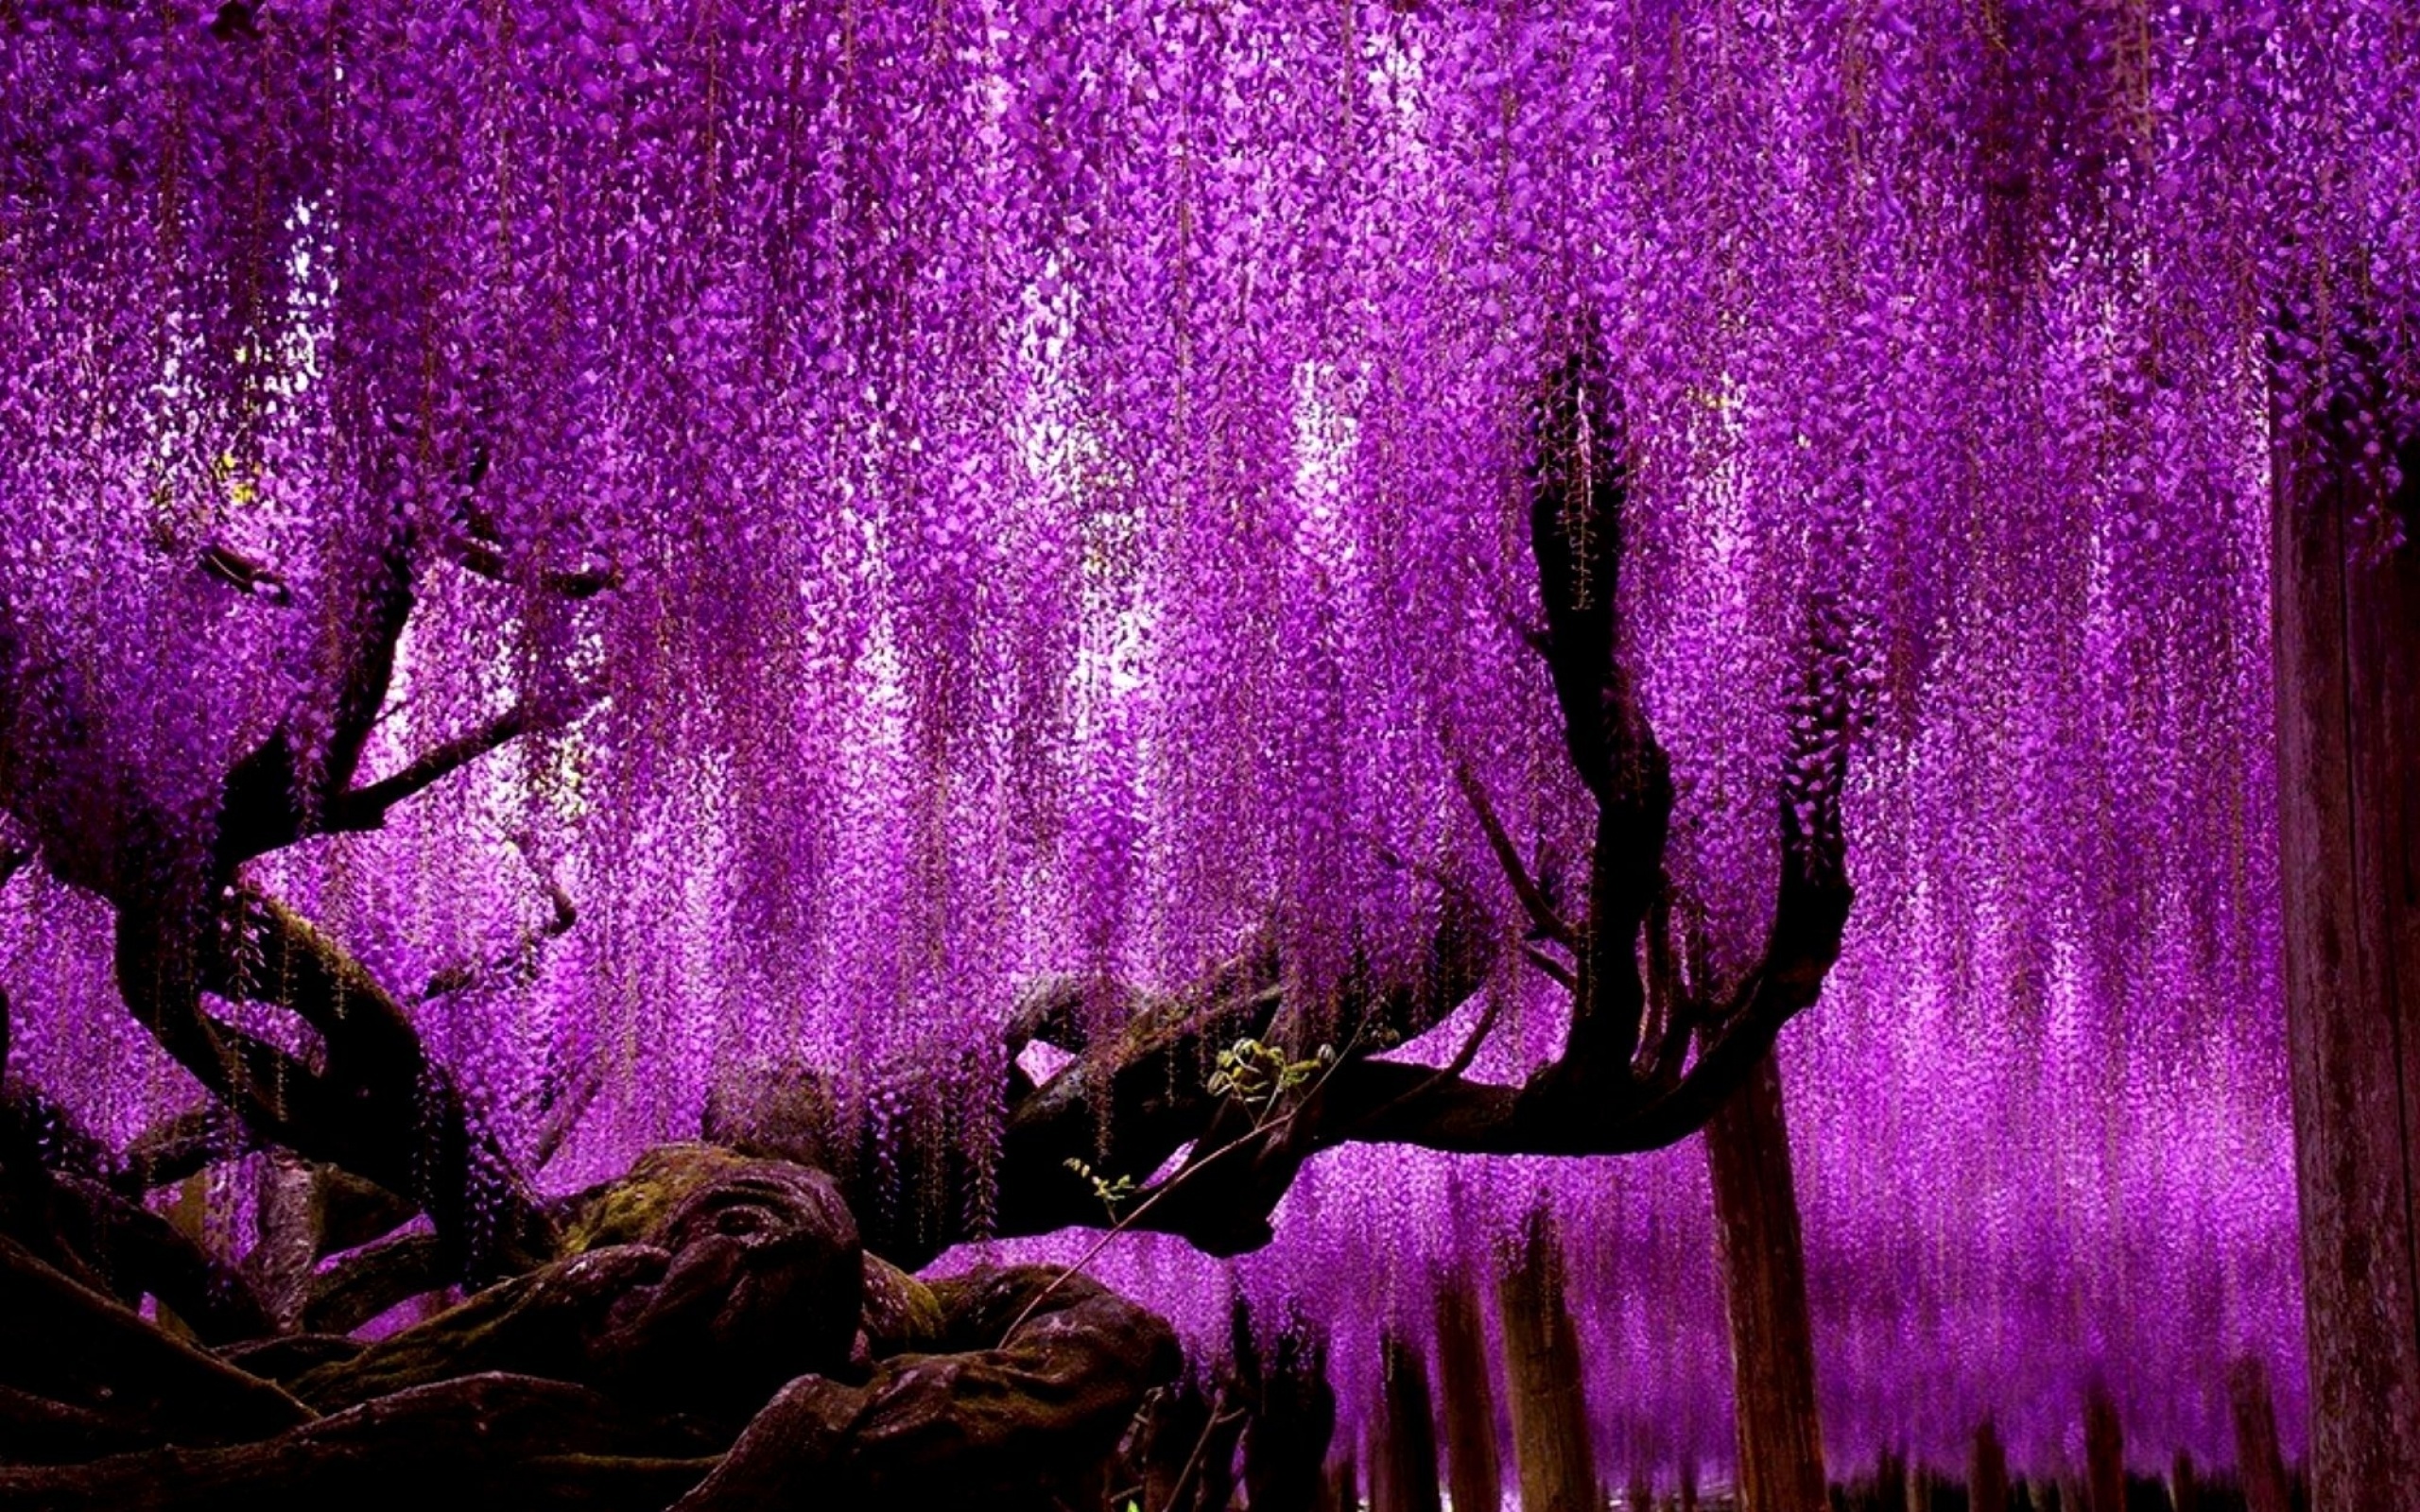 Дерево с фиолетовыми цветами как называется